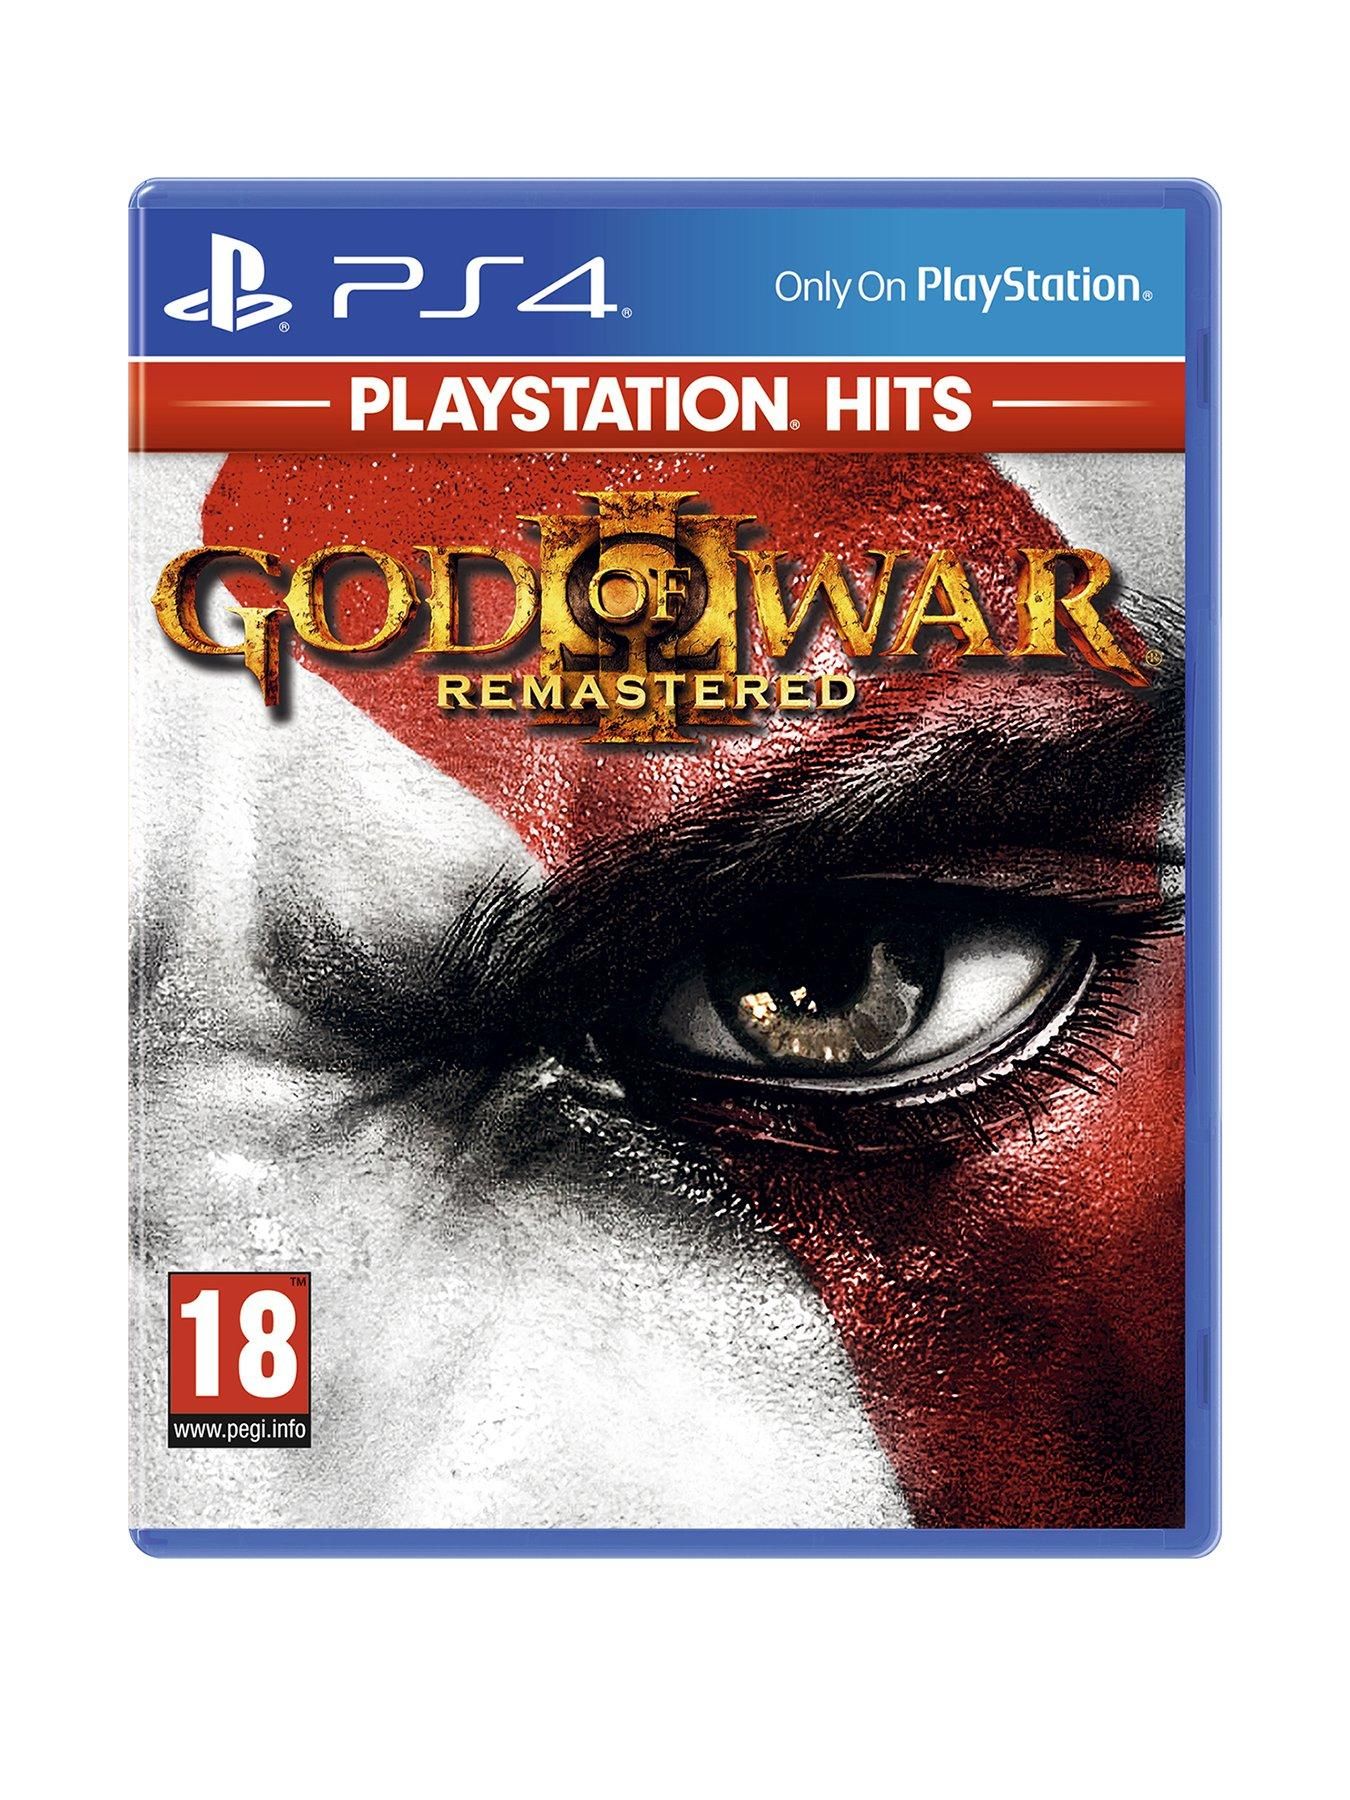 God of War III (3) (Playstation Hits) (Nordic)